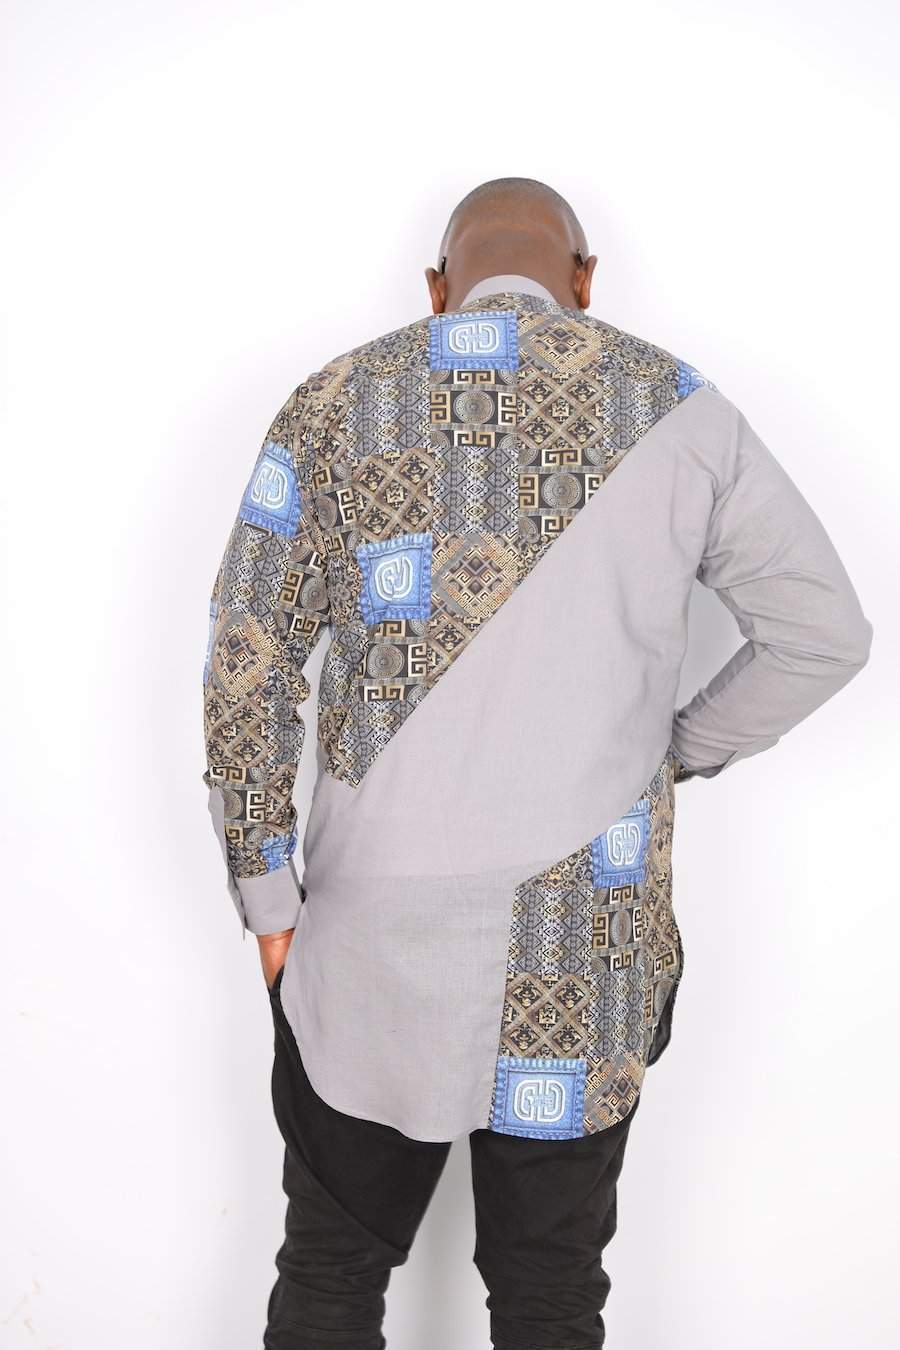 African Linen Shirt Grey-danddclothing-African Men Shirts,African Wear for Men,Grey,Linen